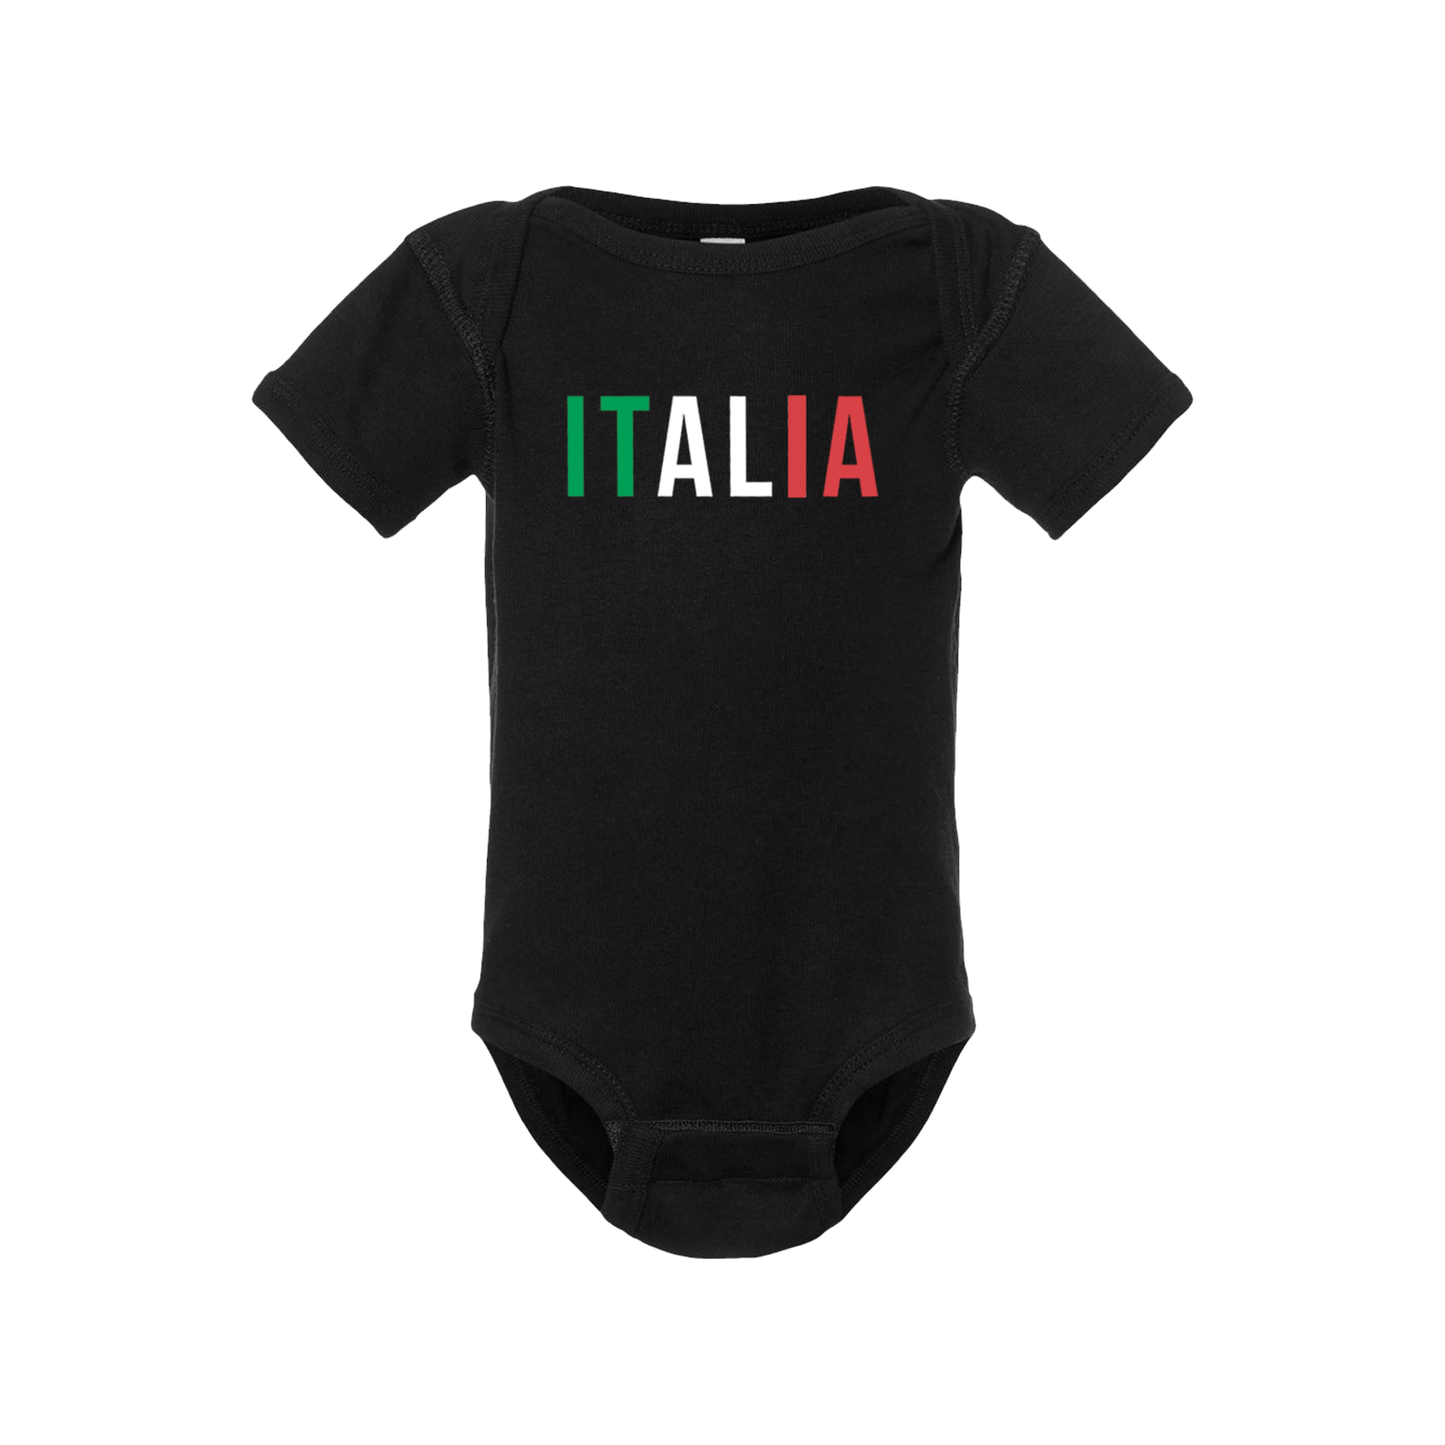 Italy Short Sleeve Onesie - Babies & Toddlers